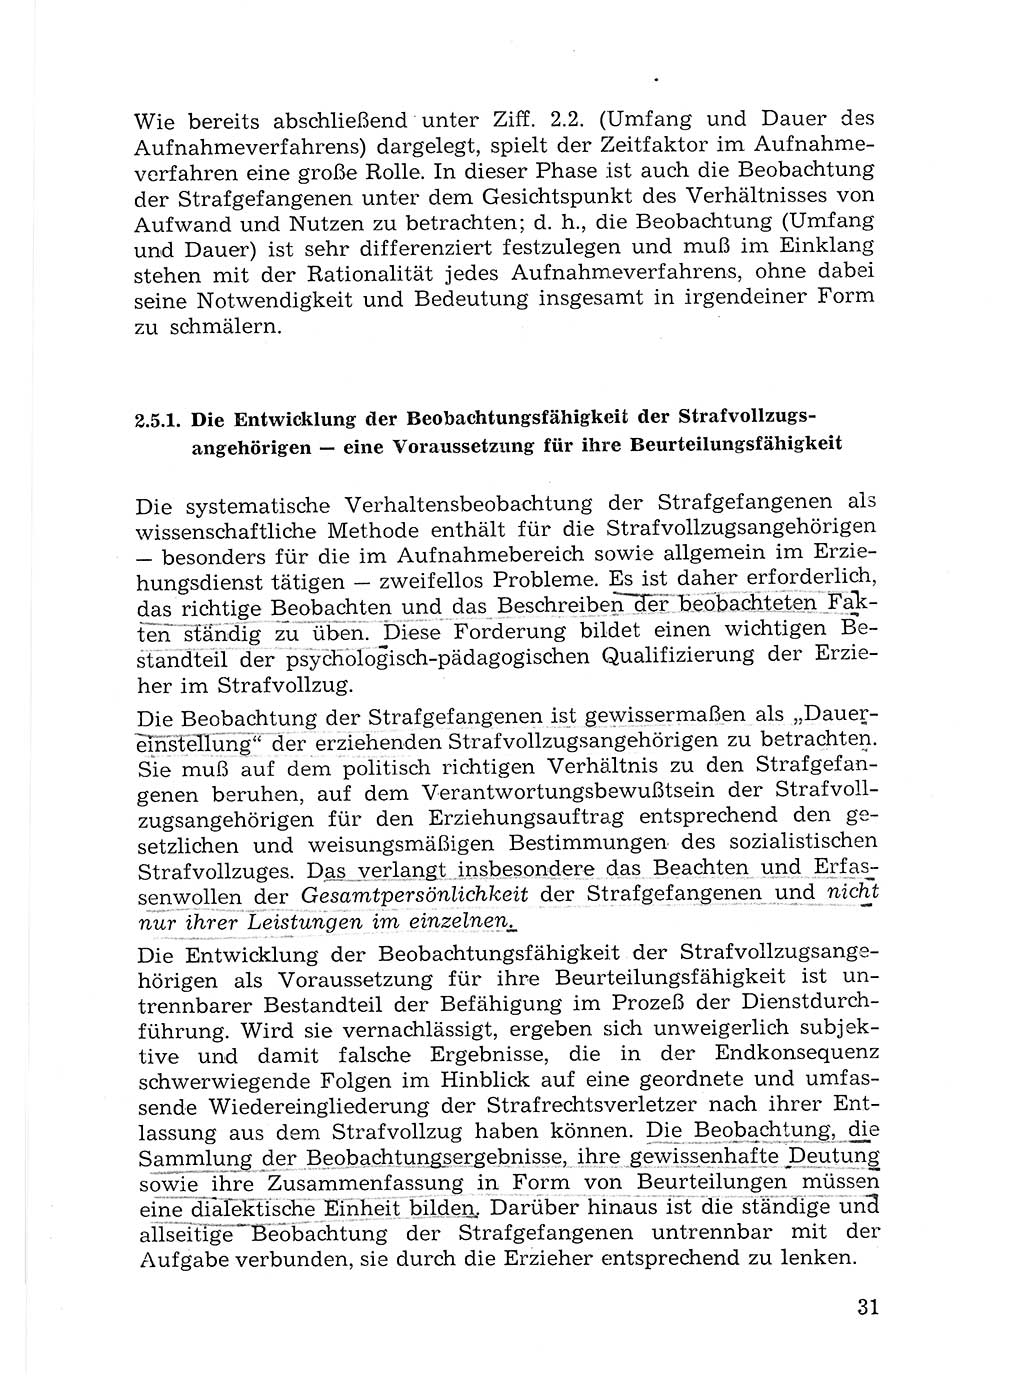 Sozialistischer Strafvollzug (SV) [Deutsche Demokratische Republik (DDR)] 1972, Seite 31 (Soz. SV DDR 1972, S. 31)